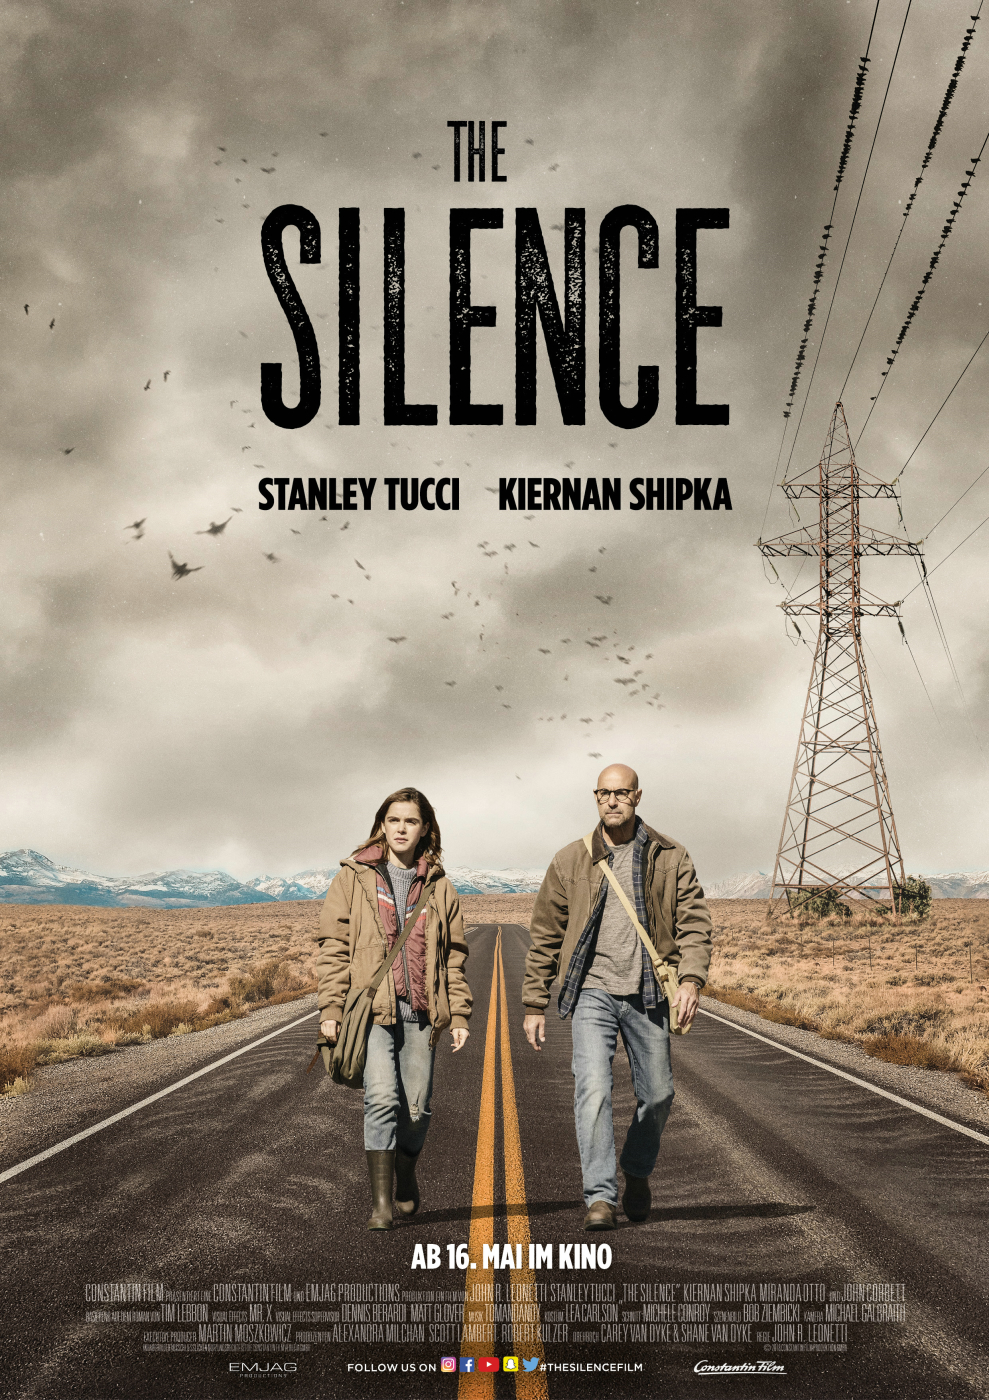 THE SILENCE Deutscher Trailer online verfügbar (Kinostart 16.05.2019